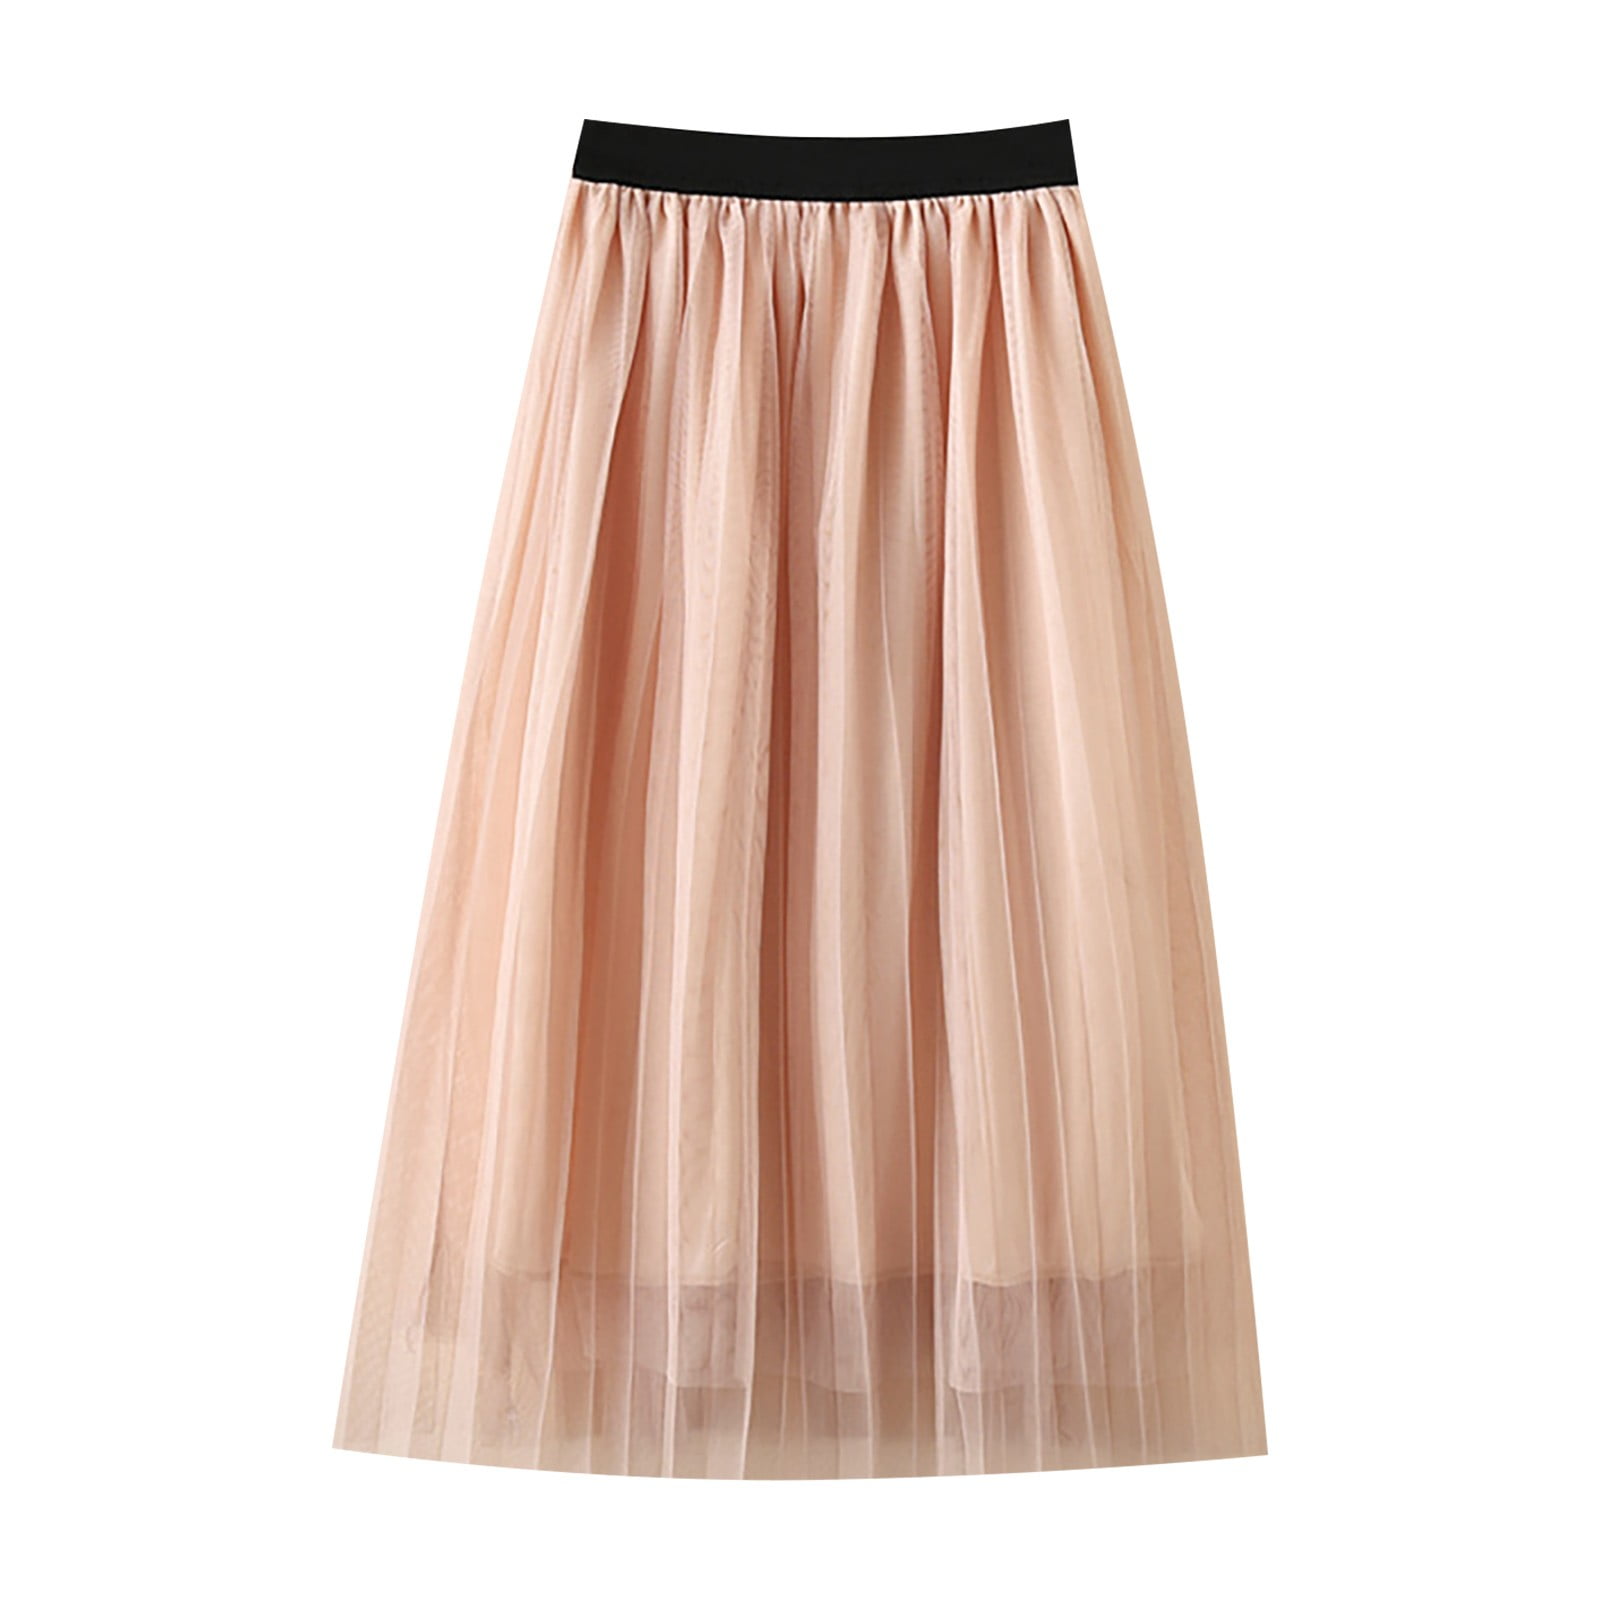 Quealent Skirt for Girls Princess Dresses for Girls Infant Tutus Skirt ...